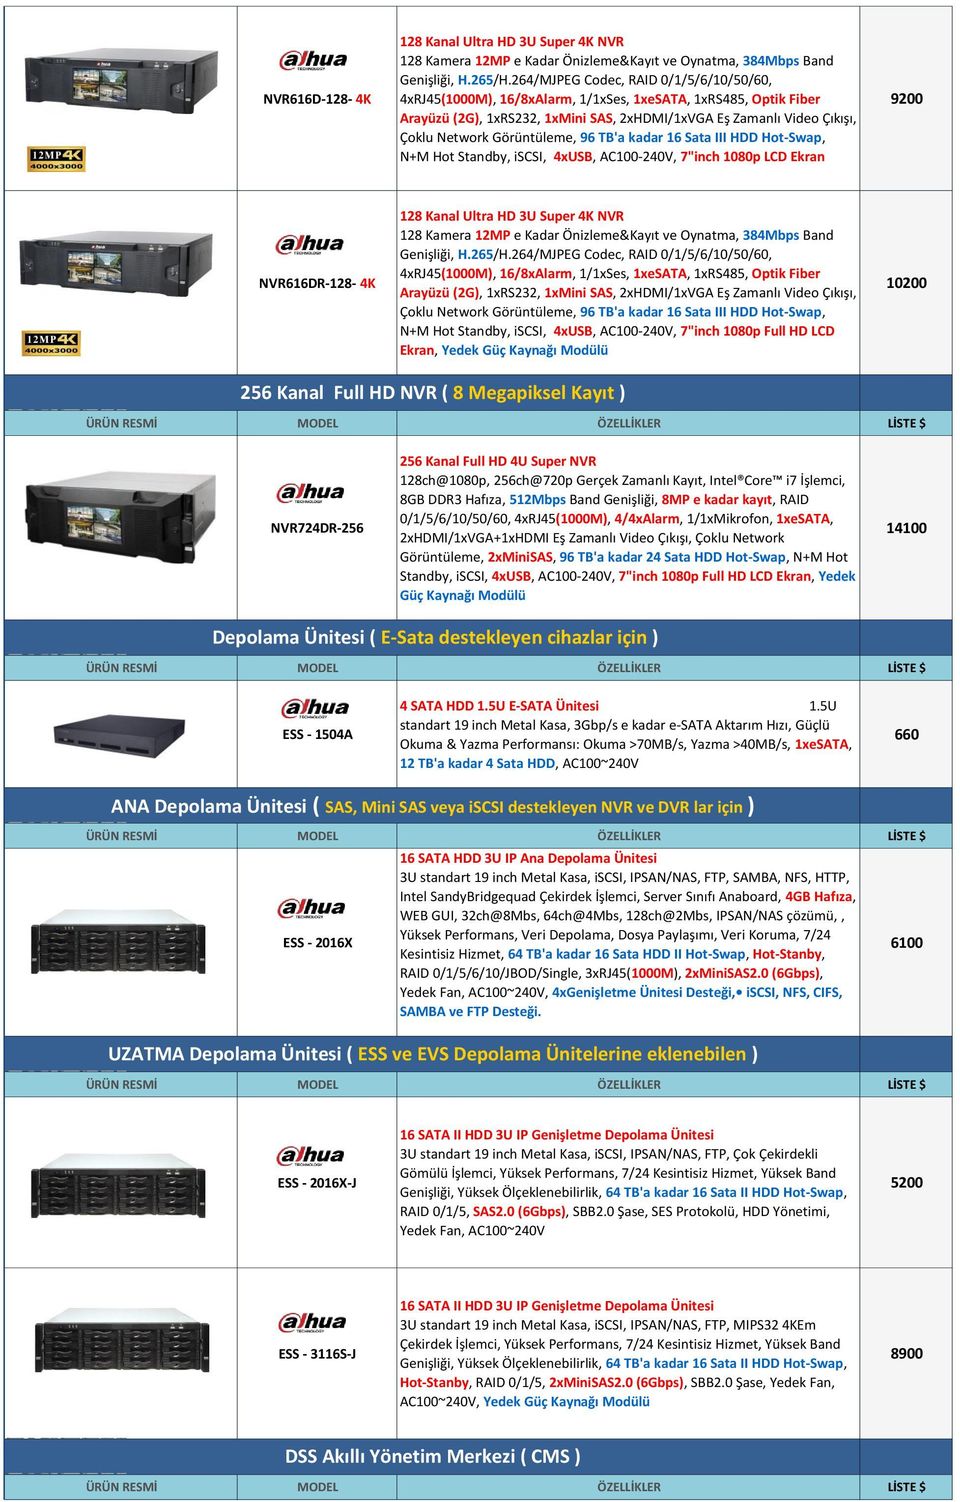 NVR616DR-128-4K 128 Kanal Ultra HD 3U Super 4K NVR 128 Kamera 12MP e Kadar Önizleme&Kayıt ve Oynatma, 384Mbps Band 4xRJ45(1000M), 16/8xAlarm, 1/1xSes, 1xeSATA, 1xRS485, Optik Fiber Arayüzü (2G),